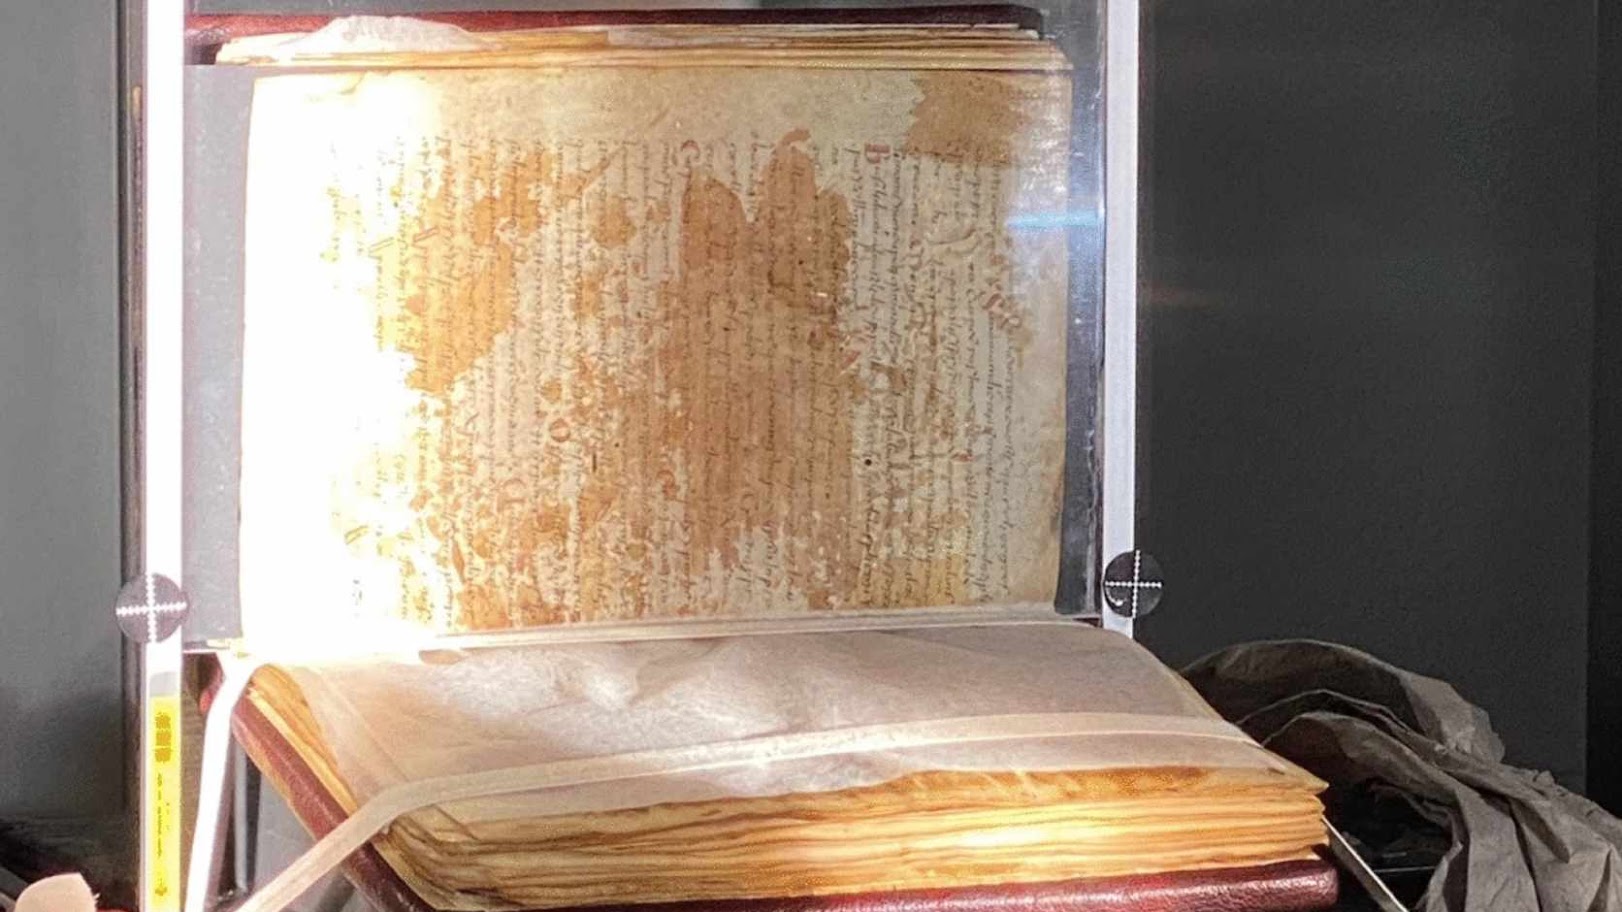 У манускрыпце з бібліятэкі, вядомай па раману "Імя ружы", знайшлі страчаны рукапіс Пталямея